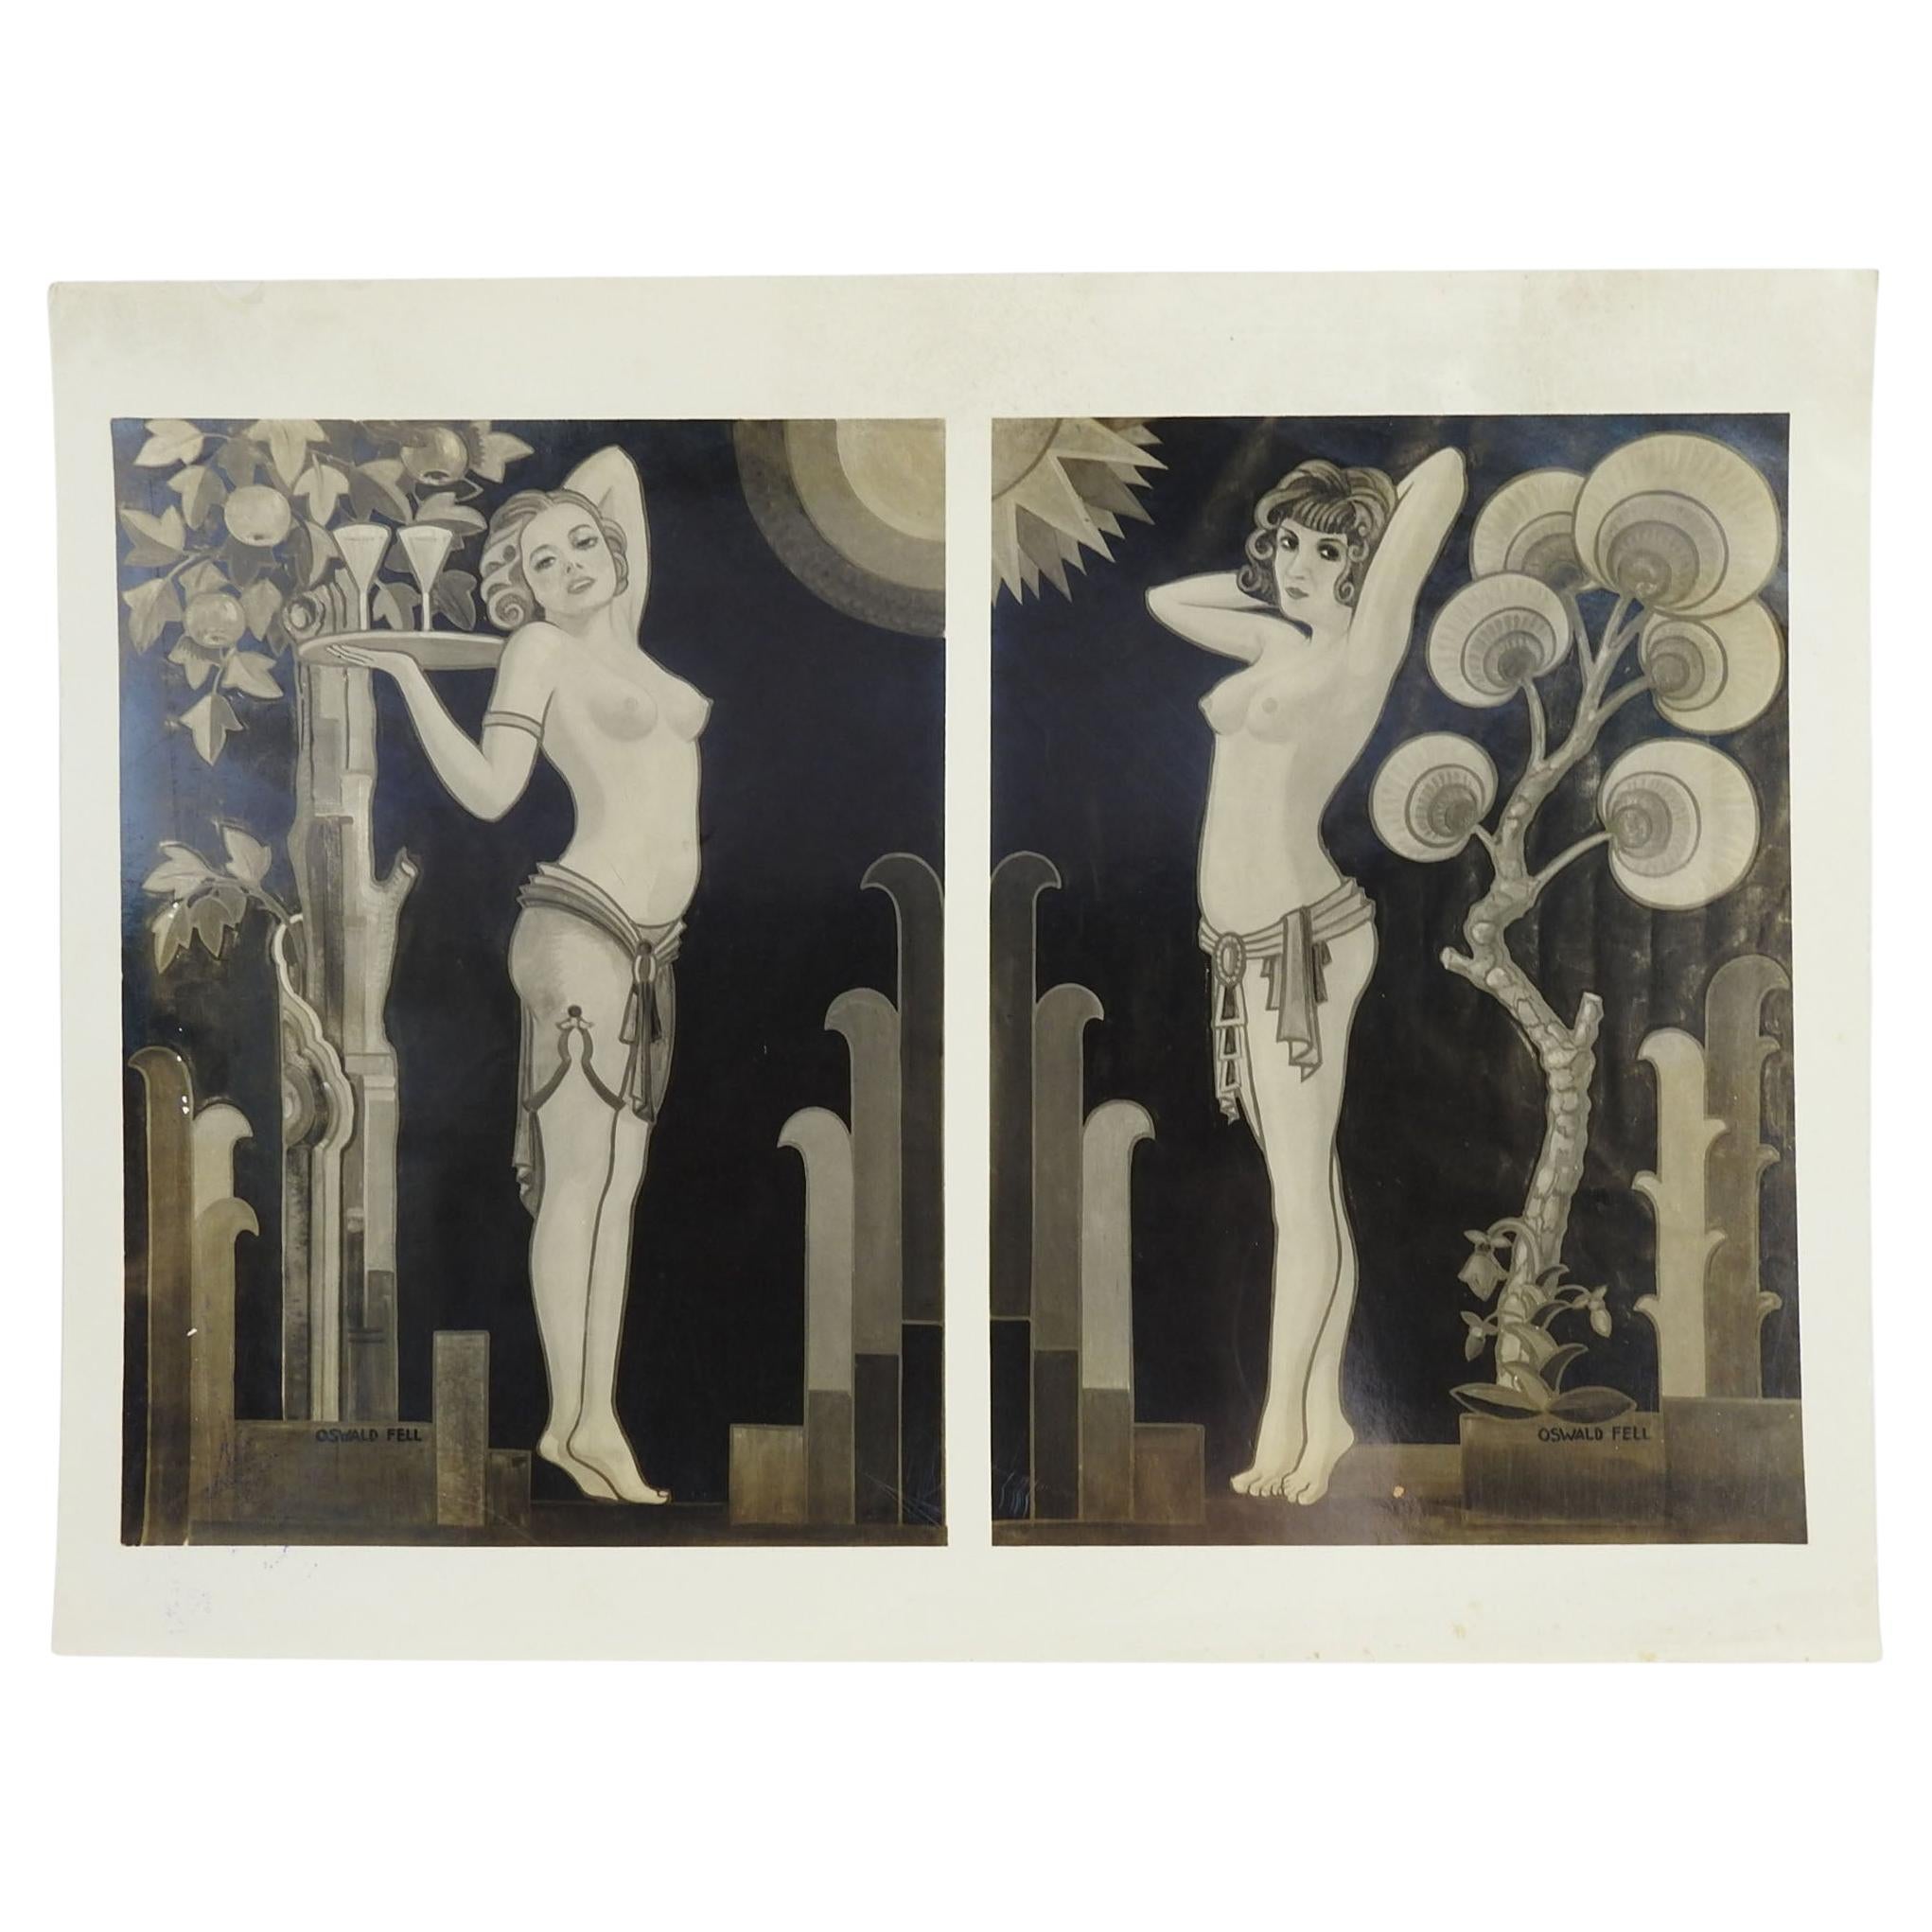 Photographie murale des années 1930 de figures féminines semi-nues de style Art déco